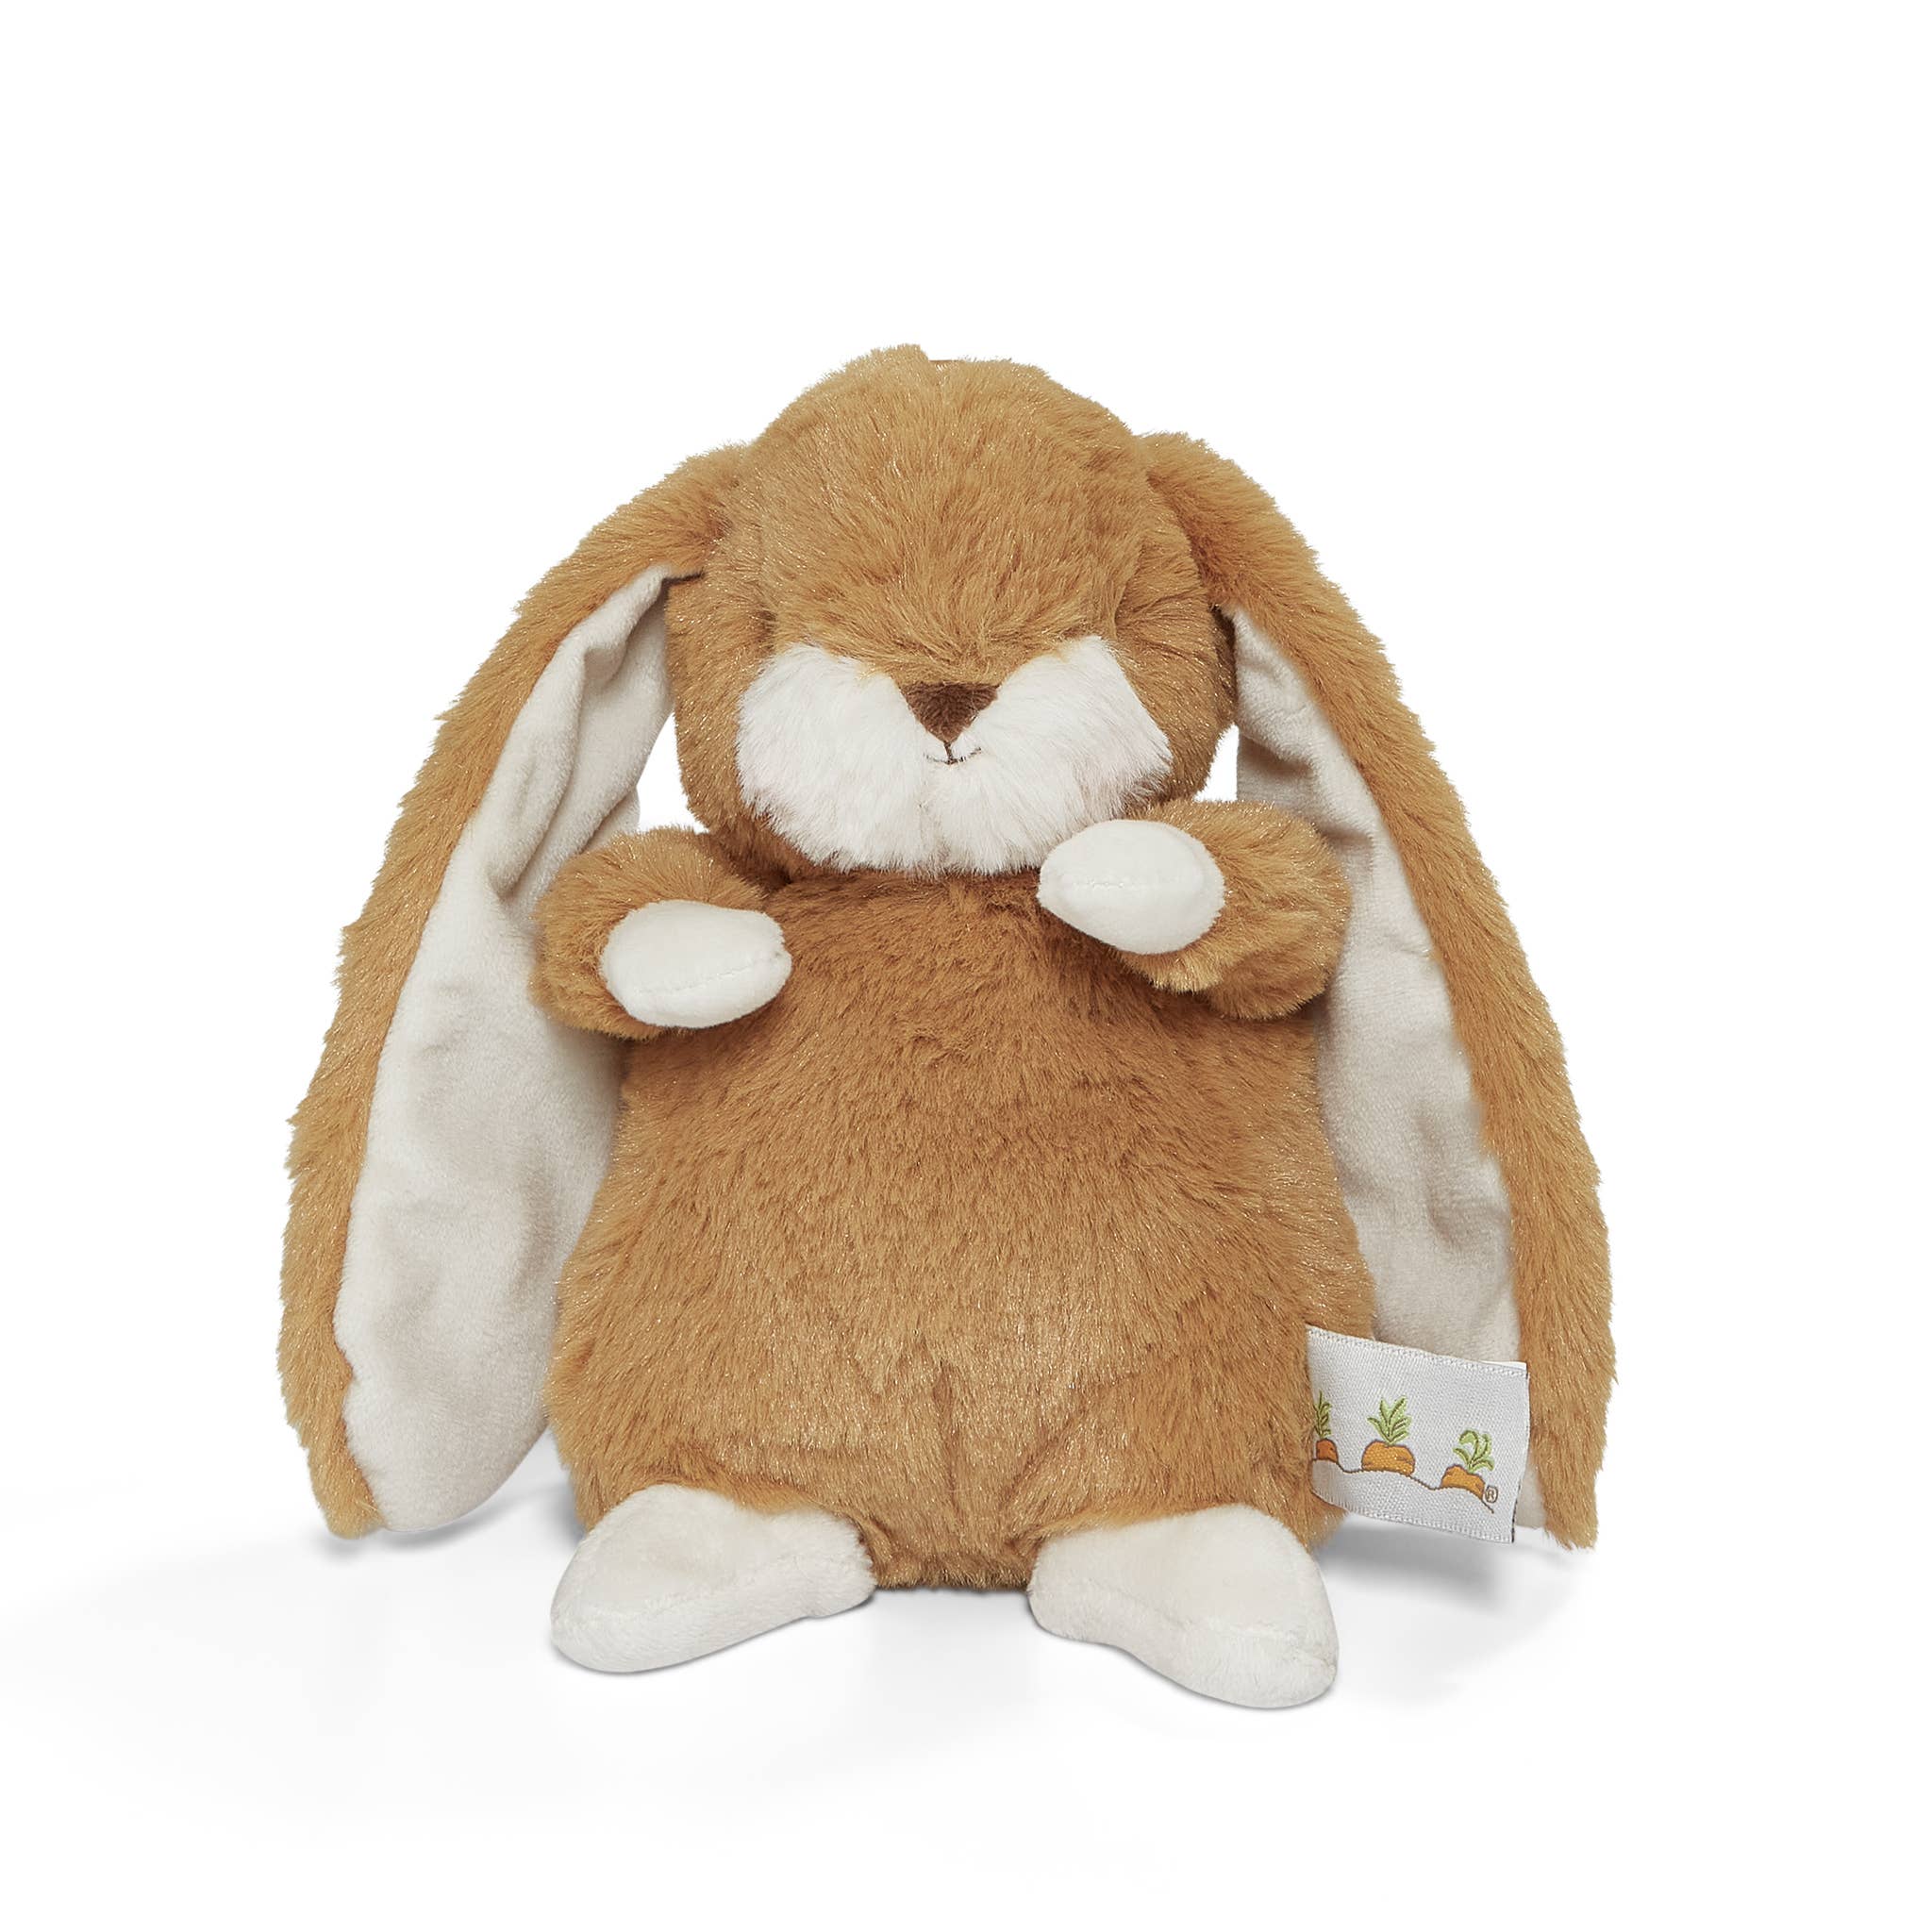 Tiny Nibble 8" Bunny - Marigold